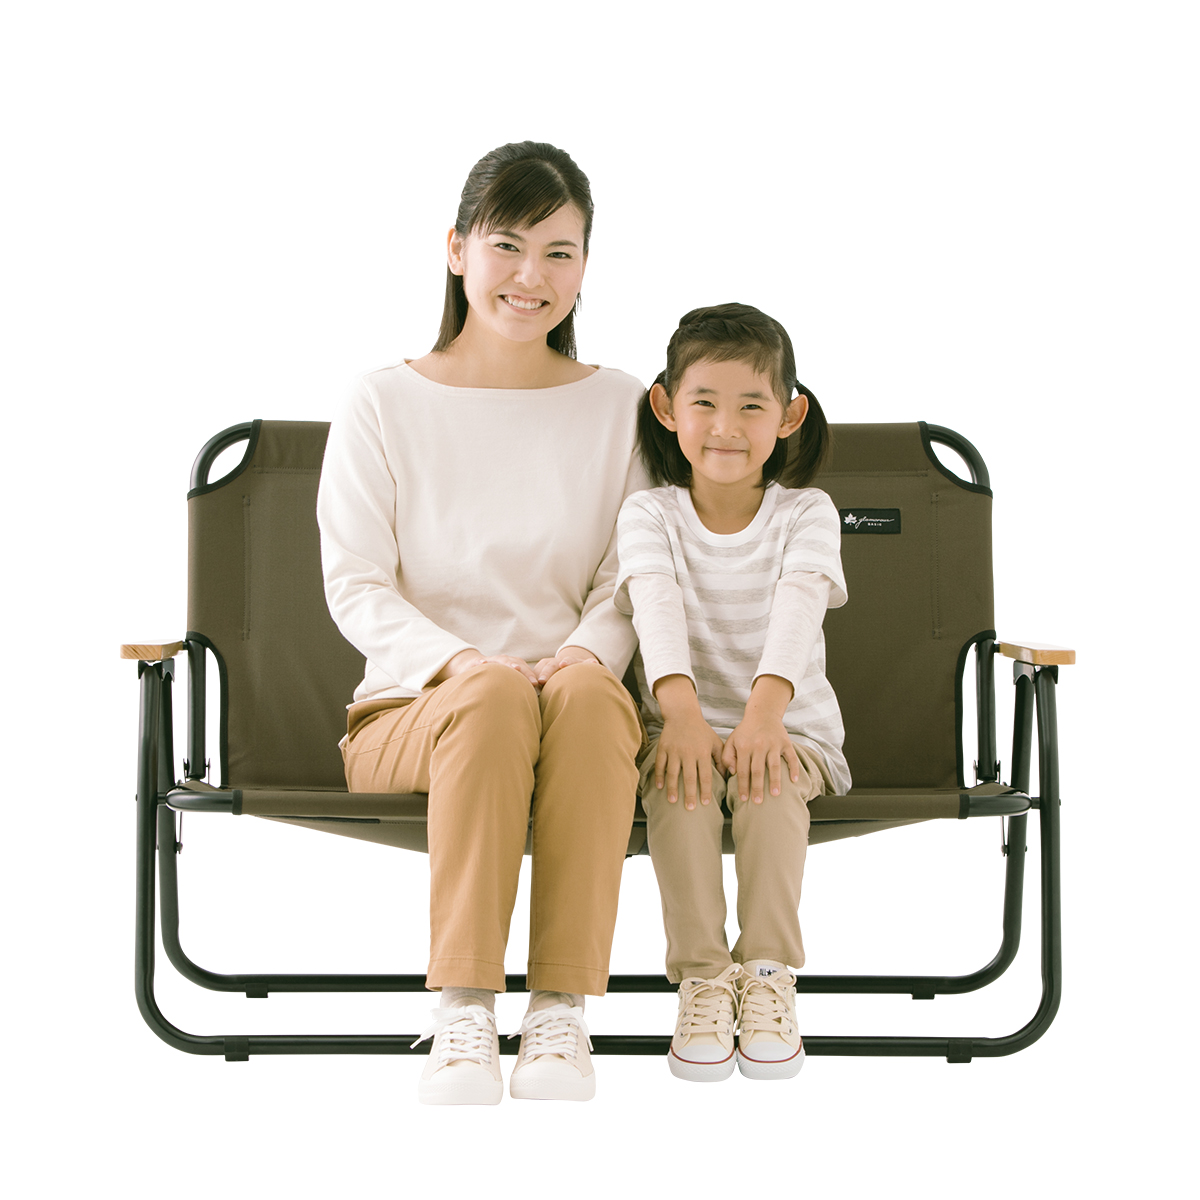 グランベーシック チェアfor2|ギア|家具|椅子・ベンチ|製品情報|ロゴス 